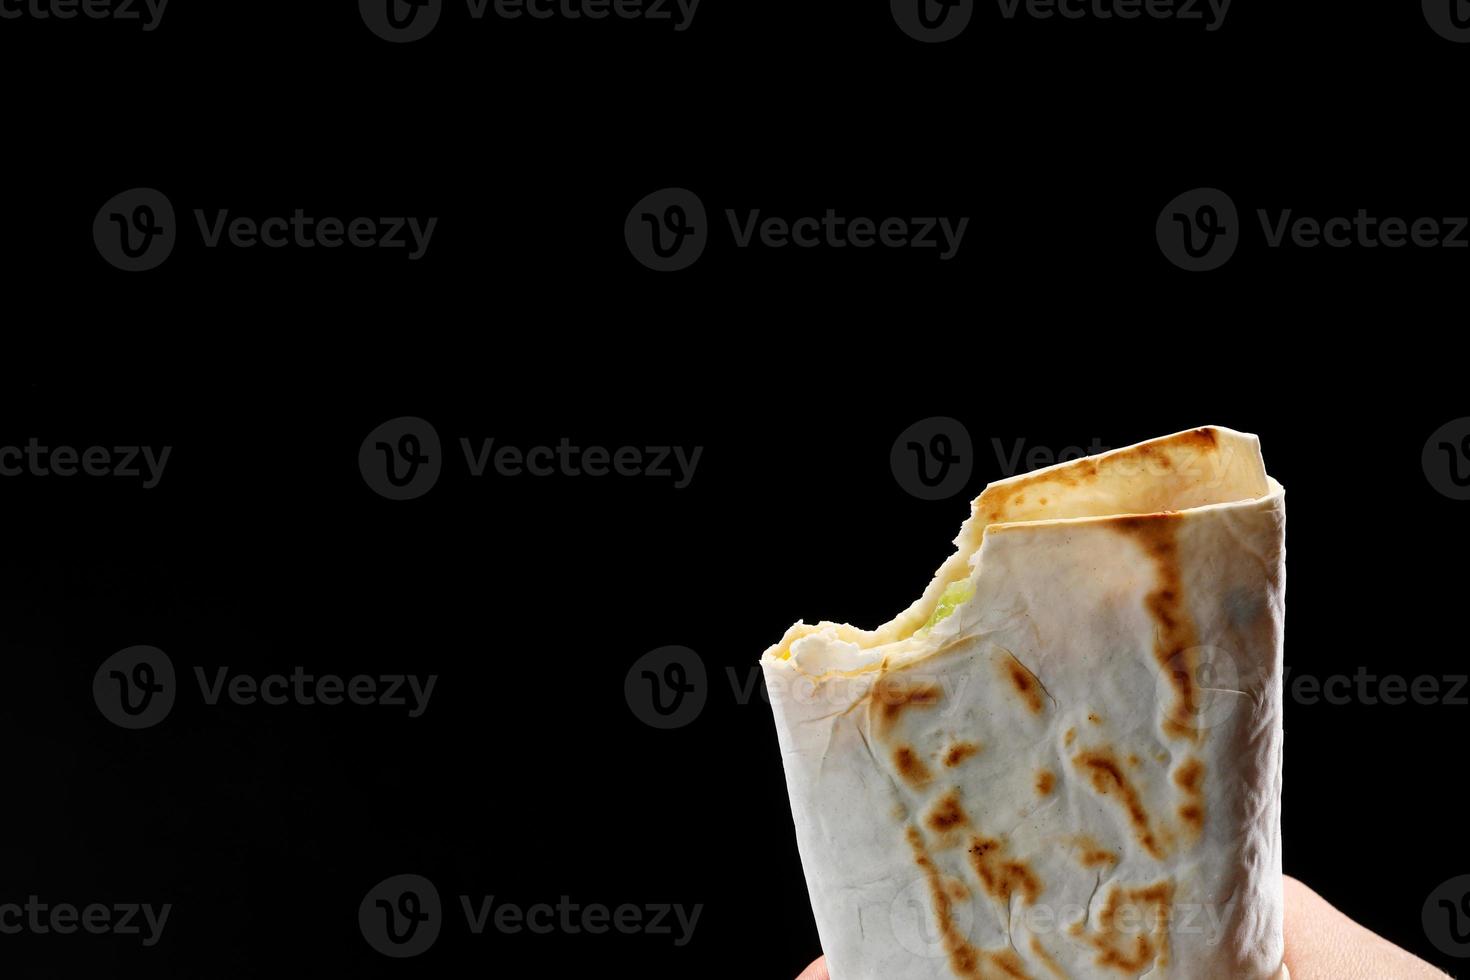 bit off a pita bread, fajitas, burrito, shawarma on a white background photo